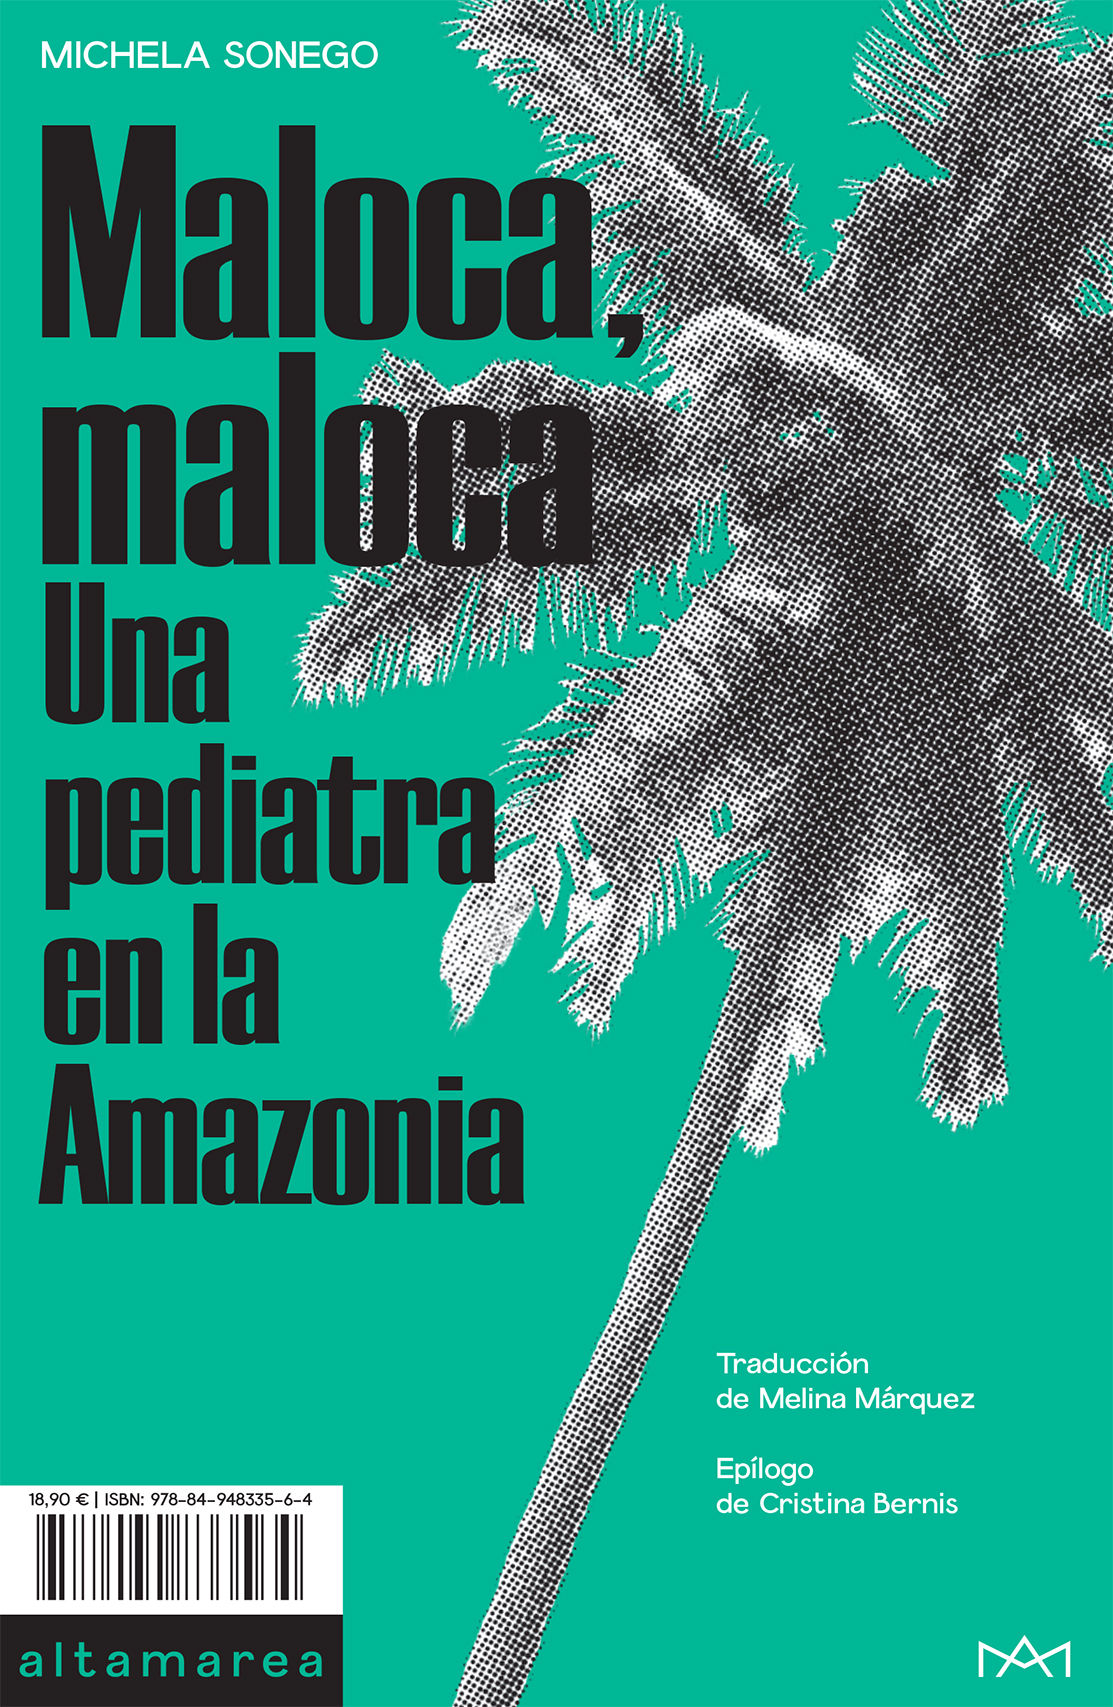 MALOCA, MALOCA. UNA PEDIATRA EN LA AMAZONIA